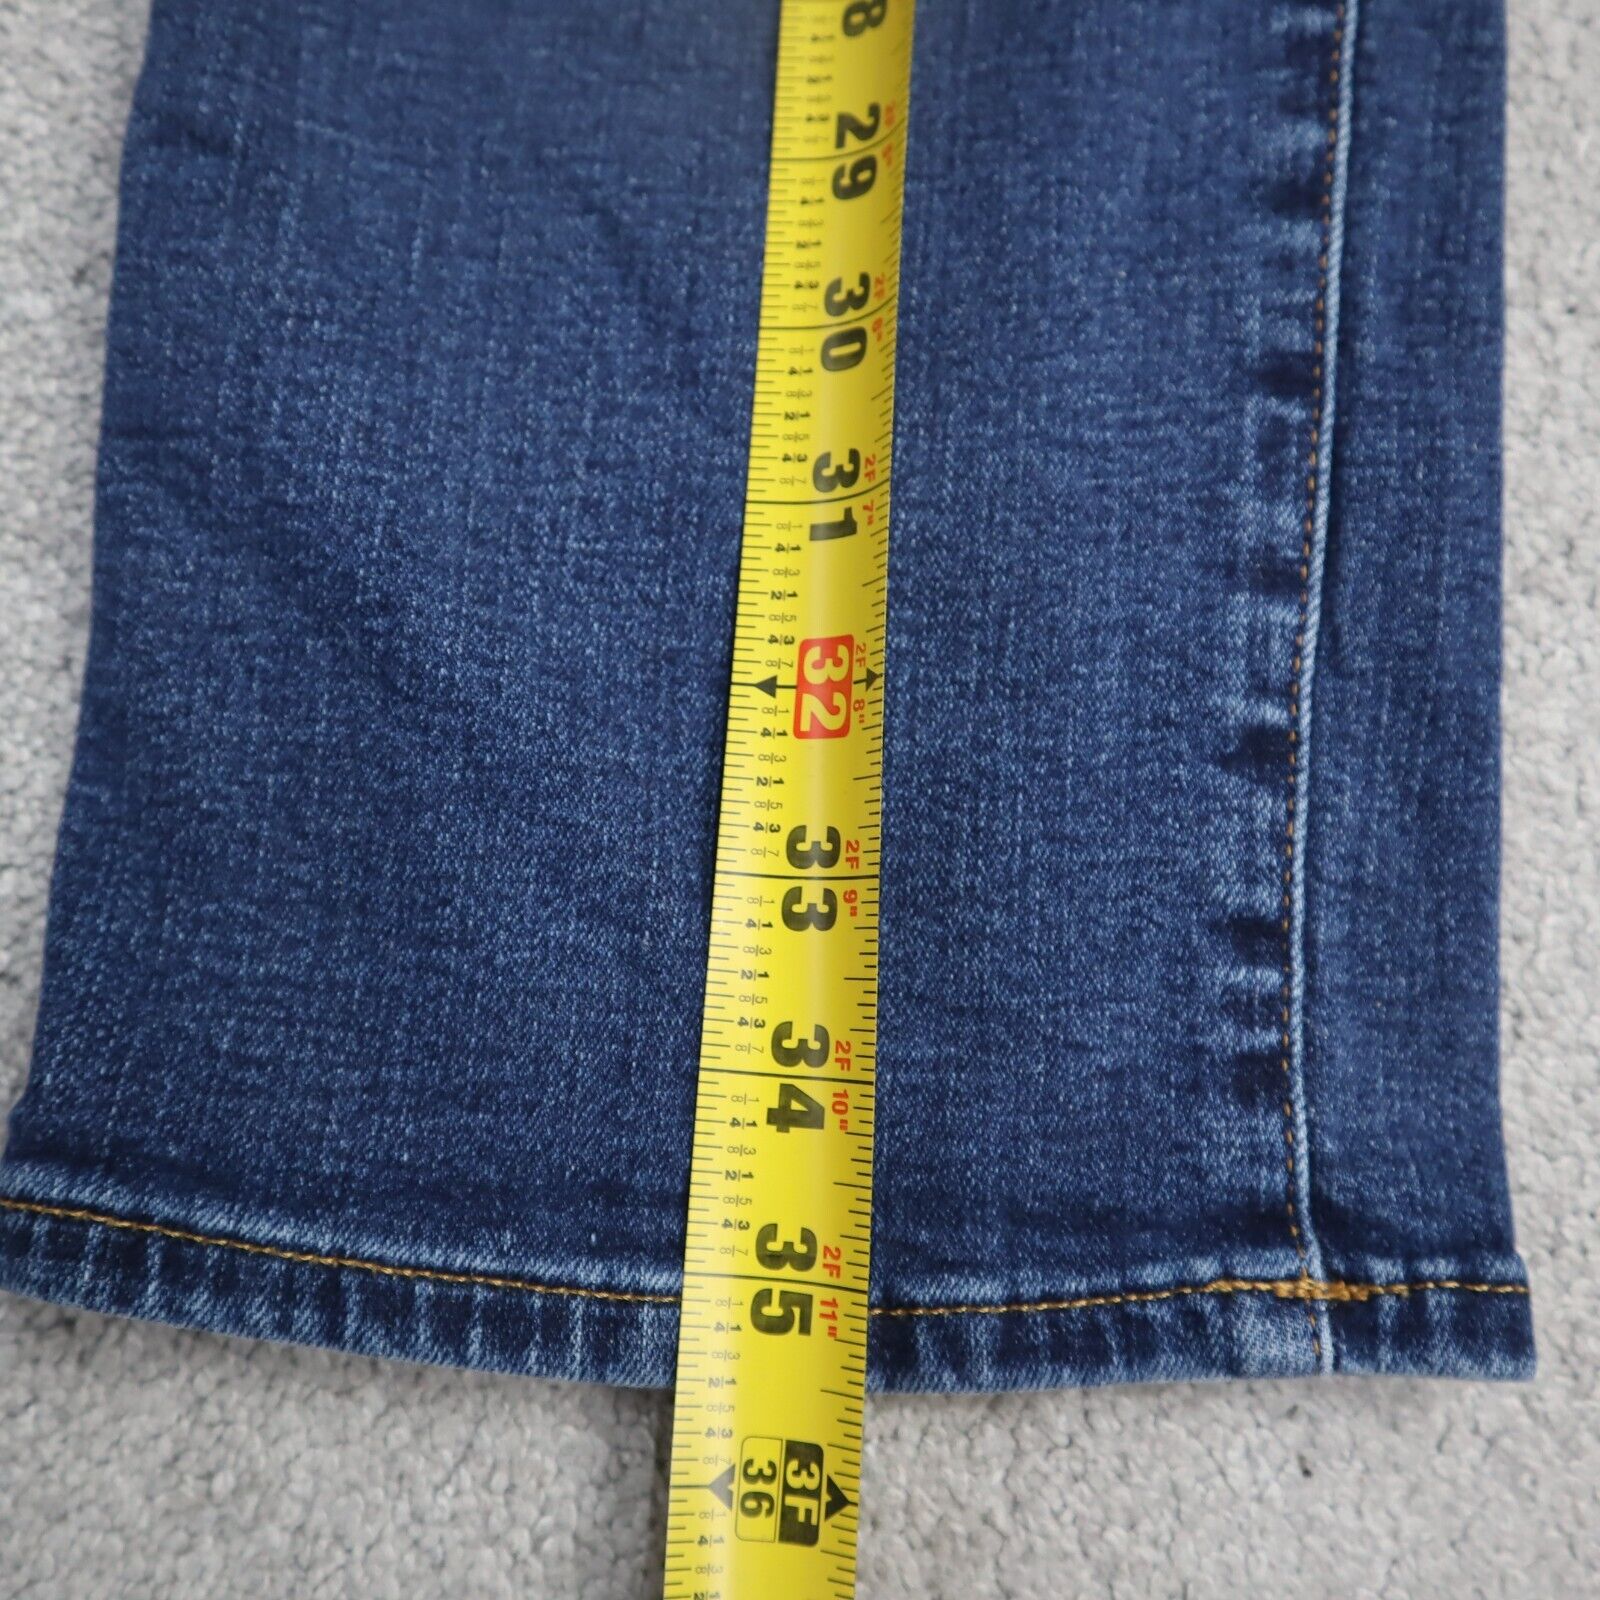 American Eagle, Vintage Jeans, Men's Jeans, 29/30, Boot Cut, Blue